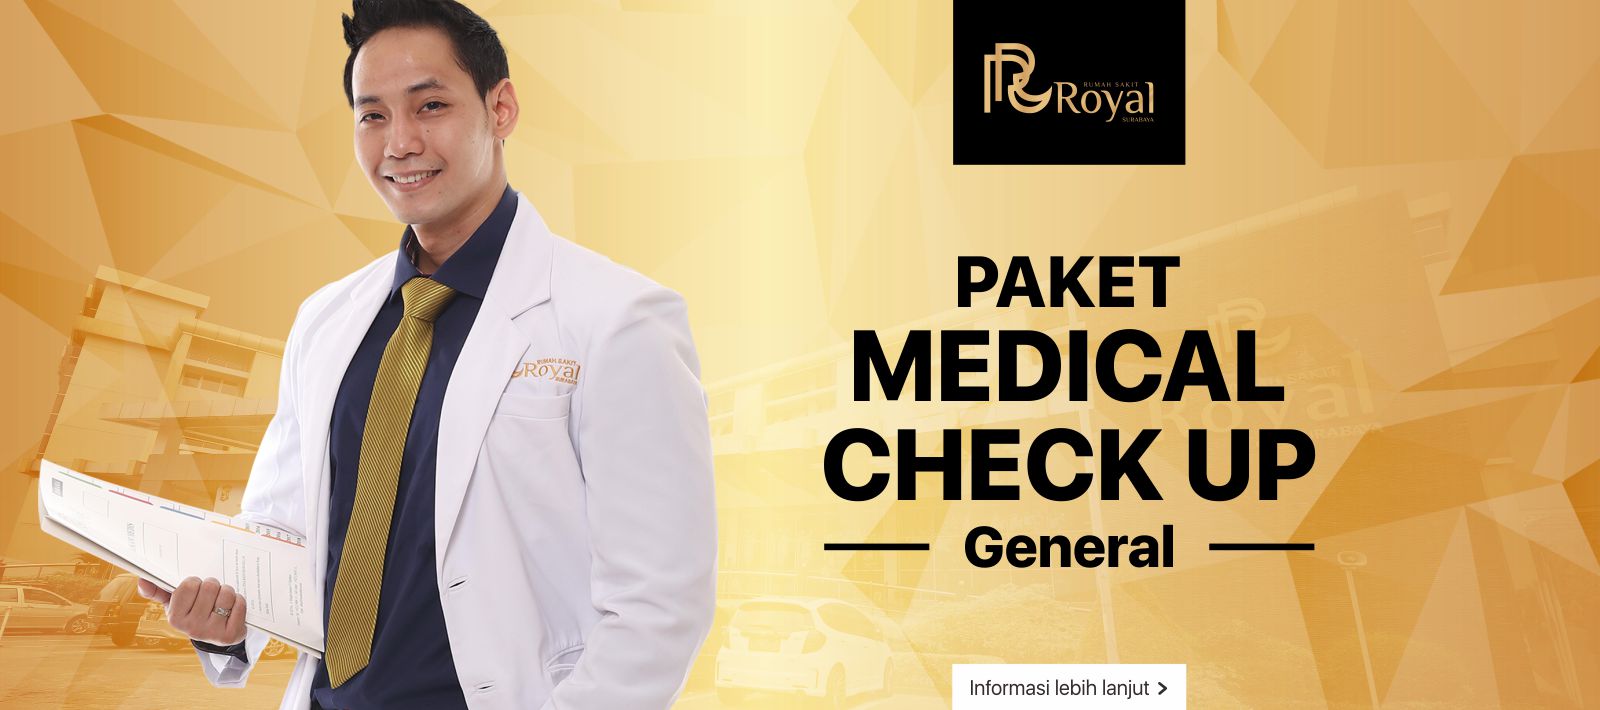 Promosi Paket Royal Medical Check Up